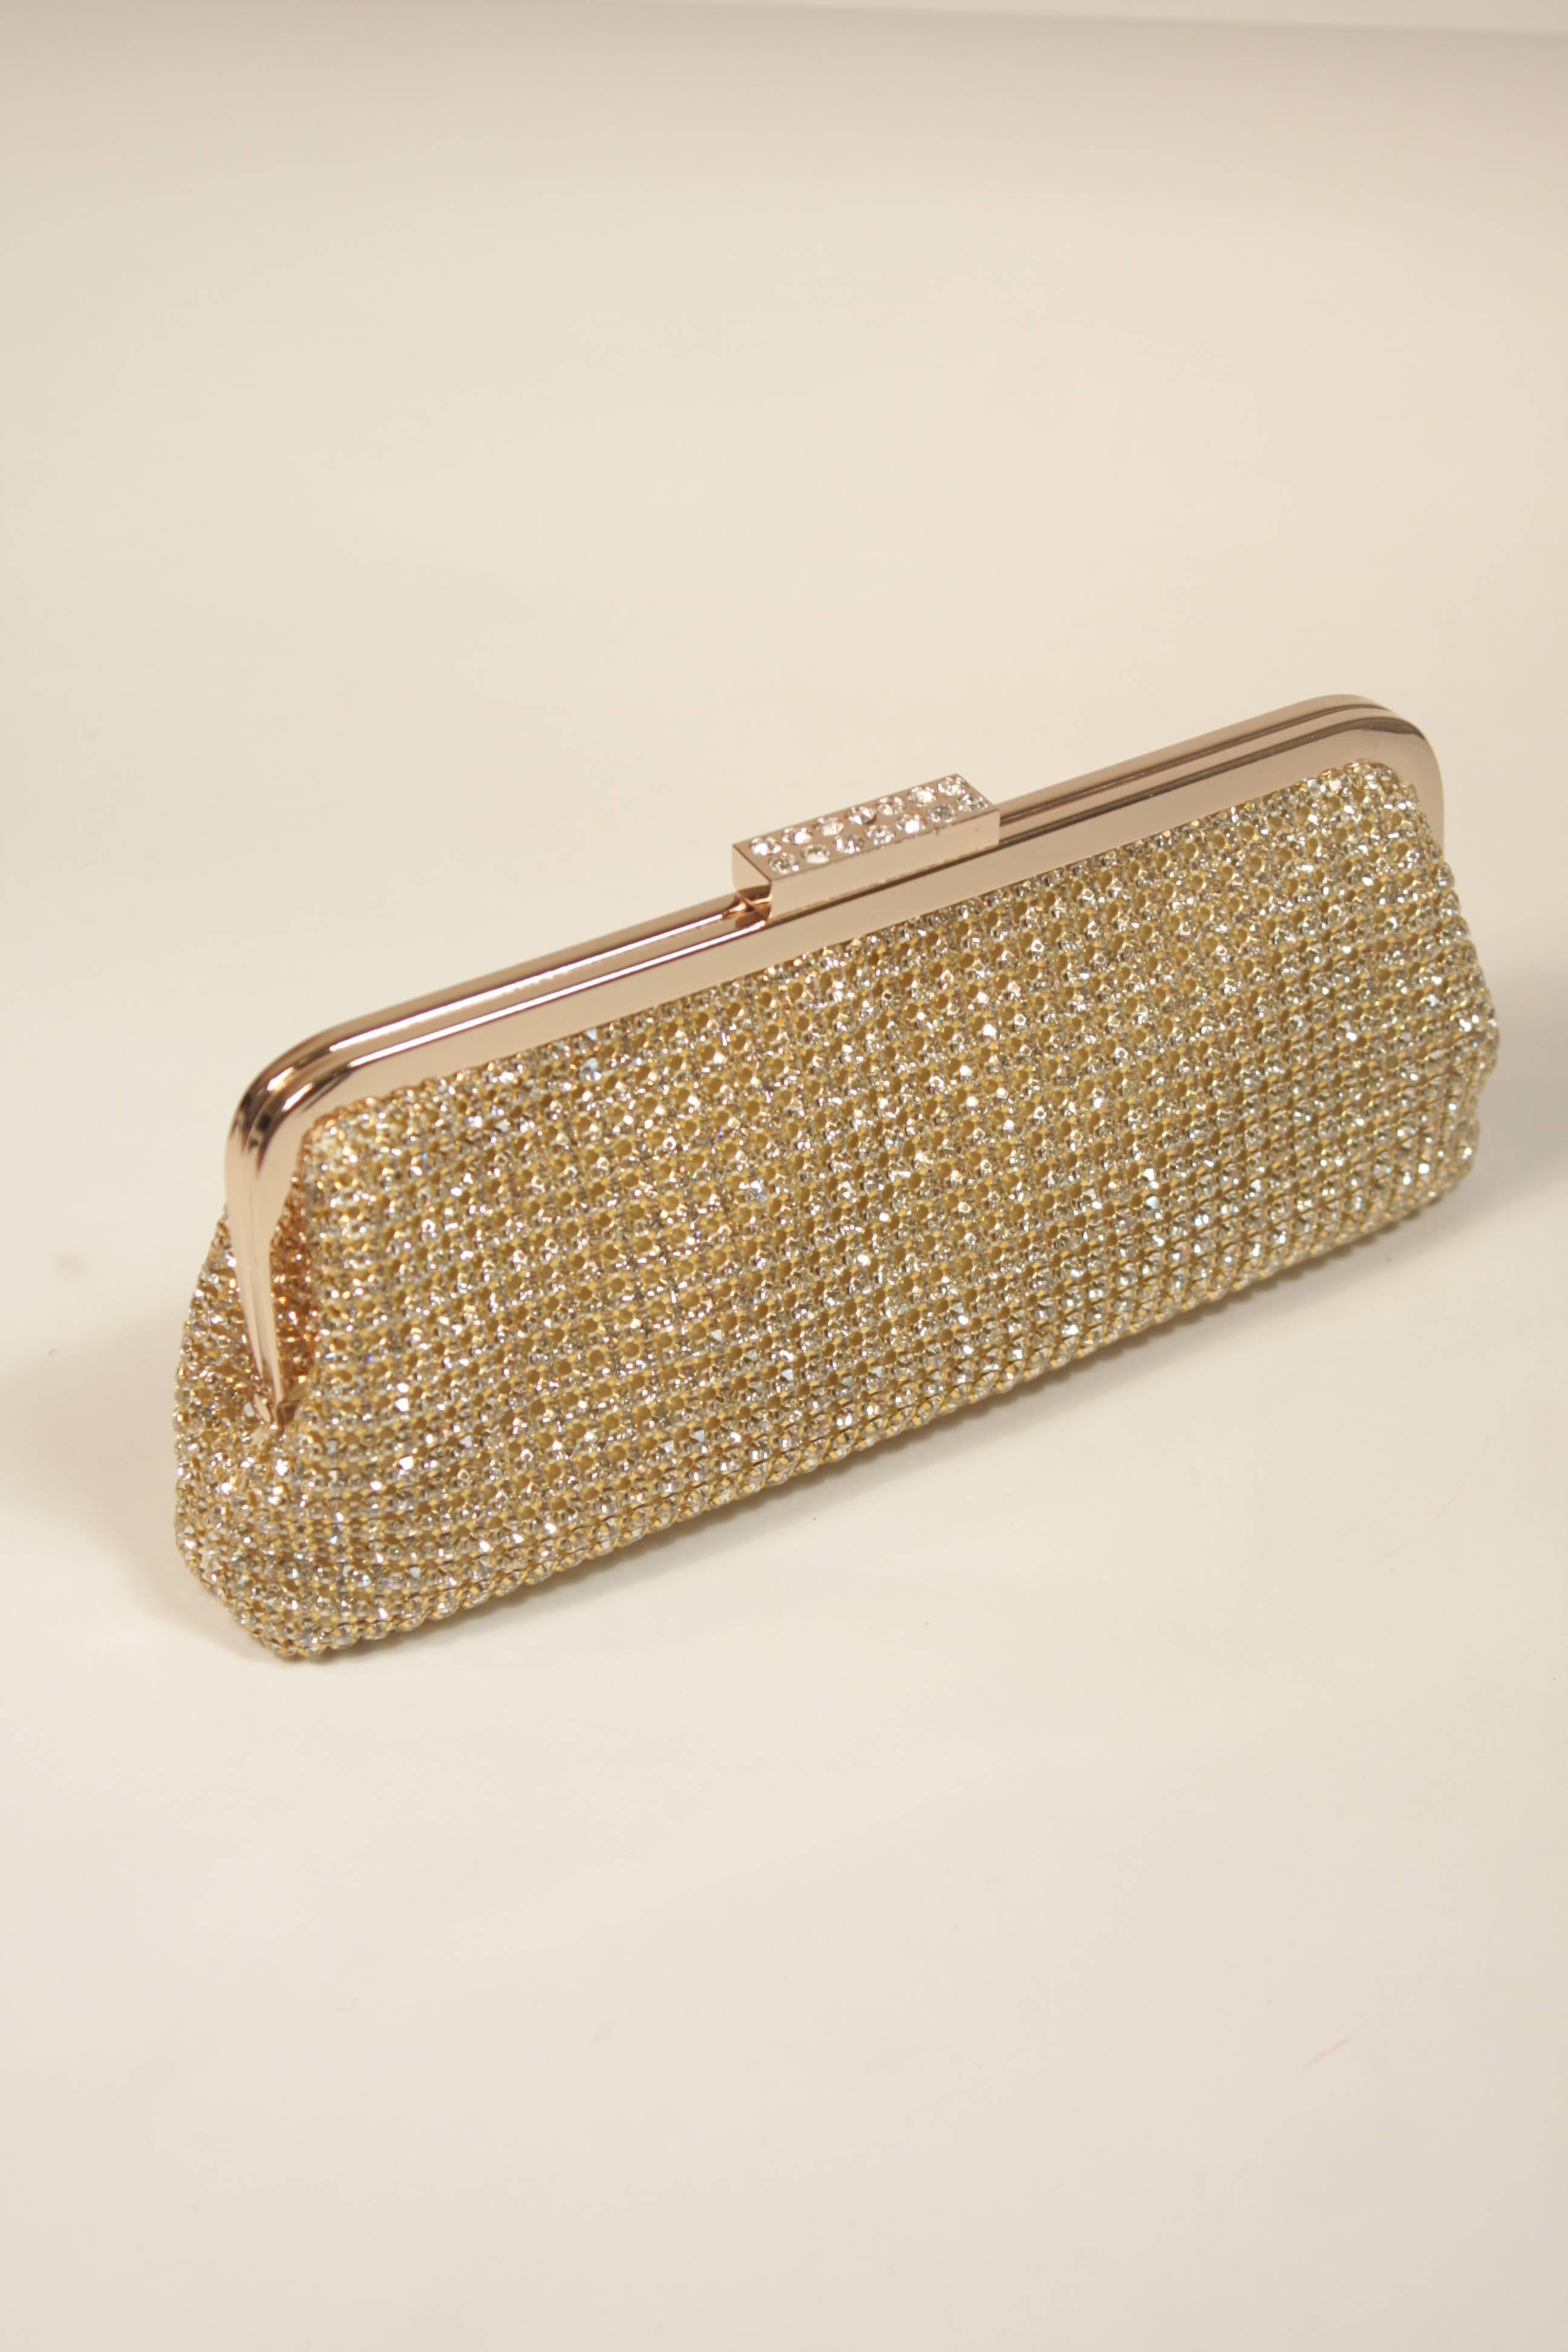 gold rhinestone clutch purse